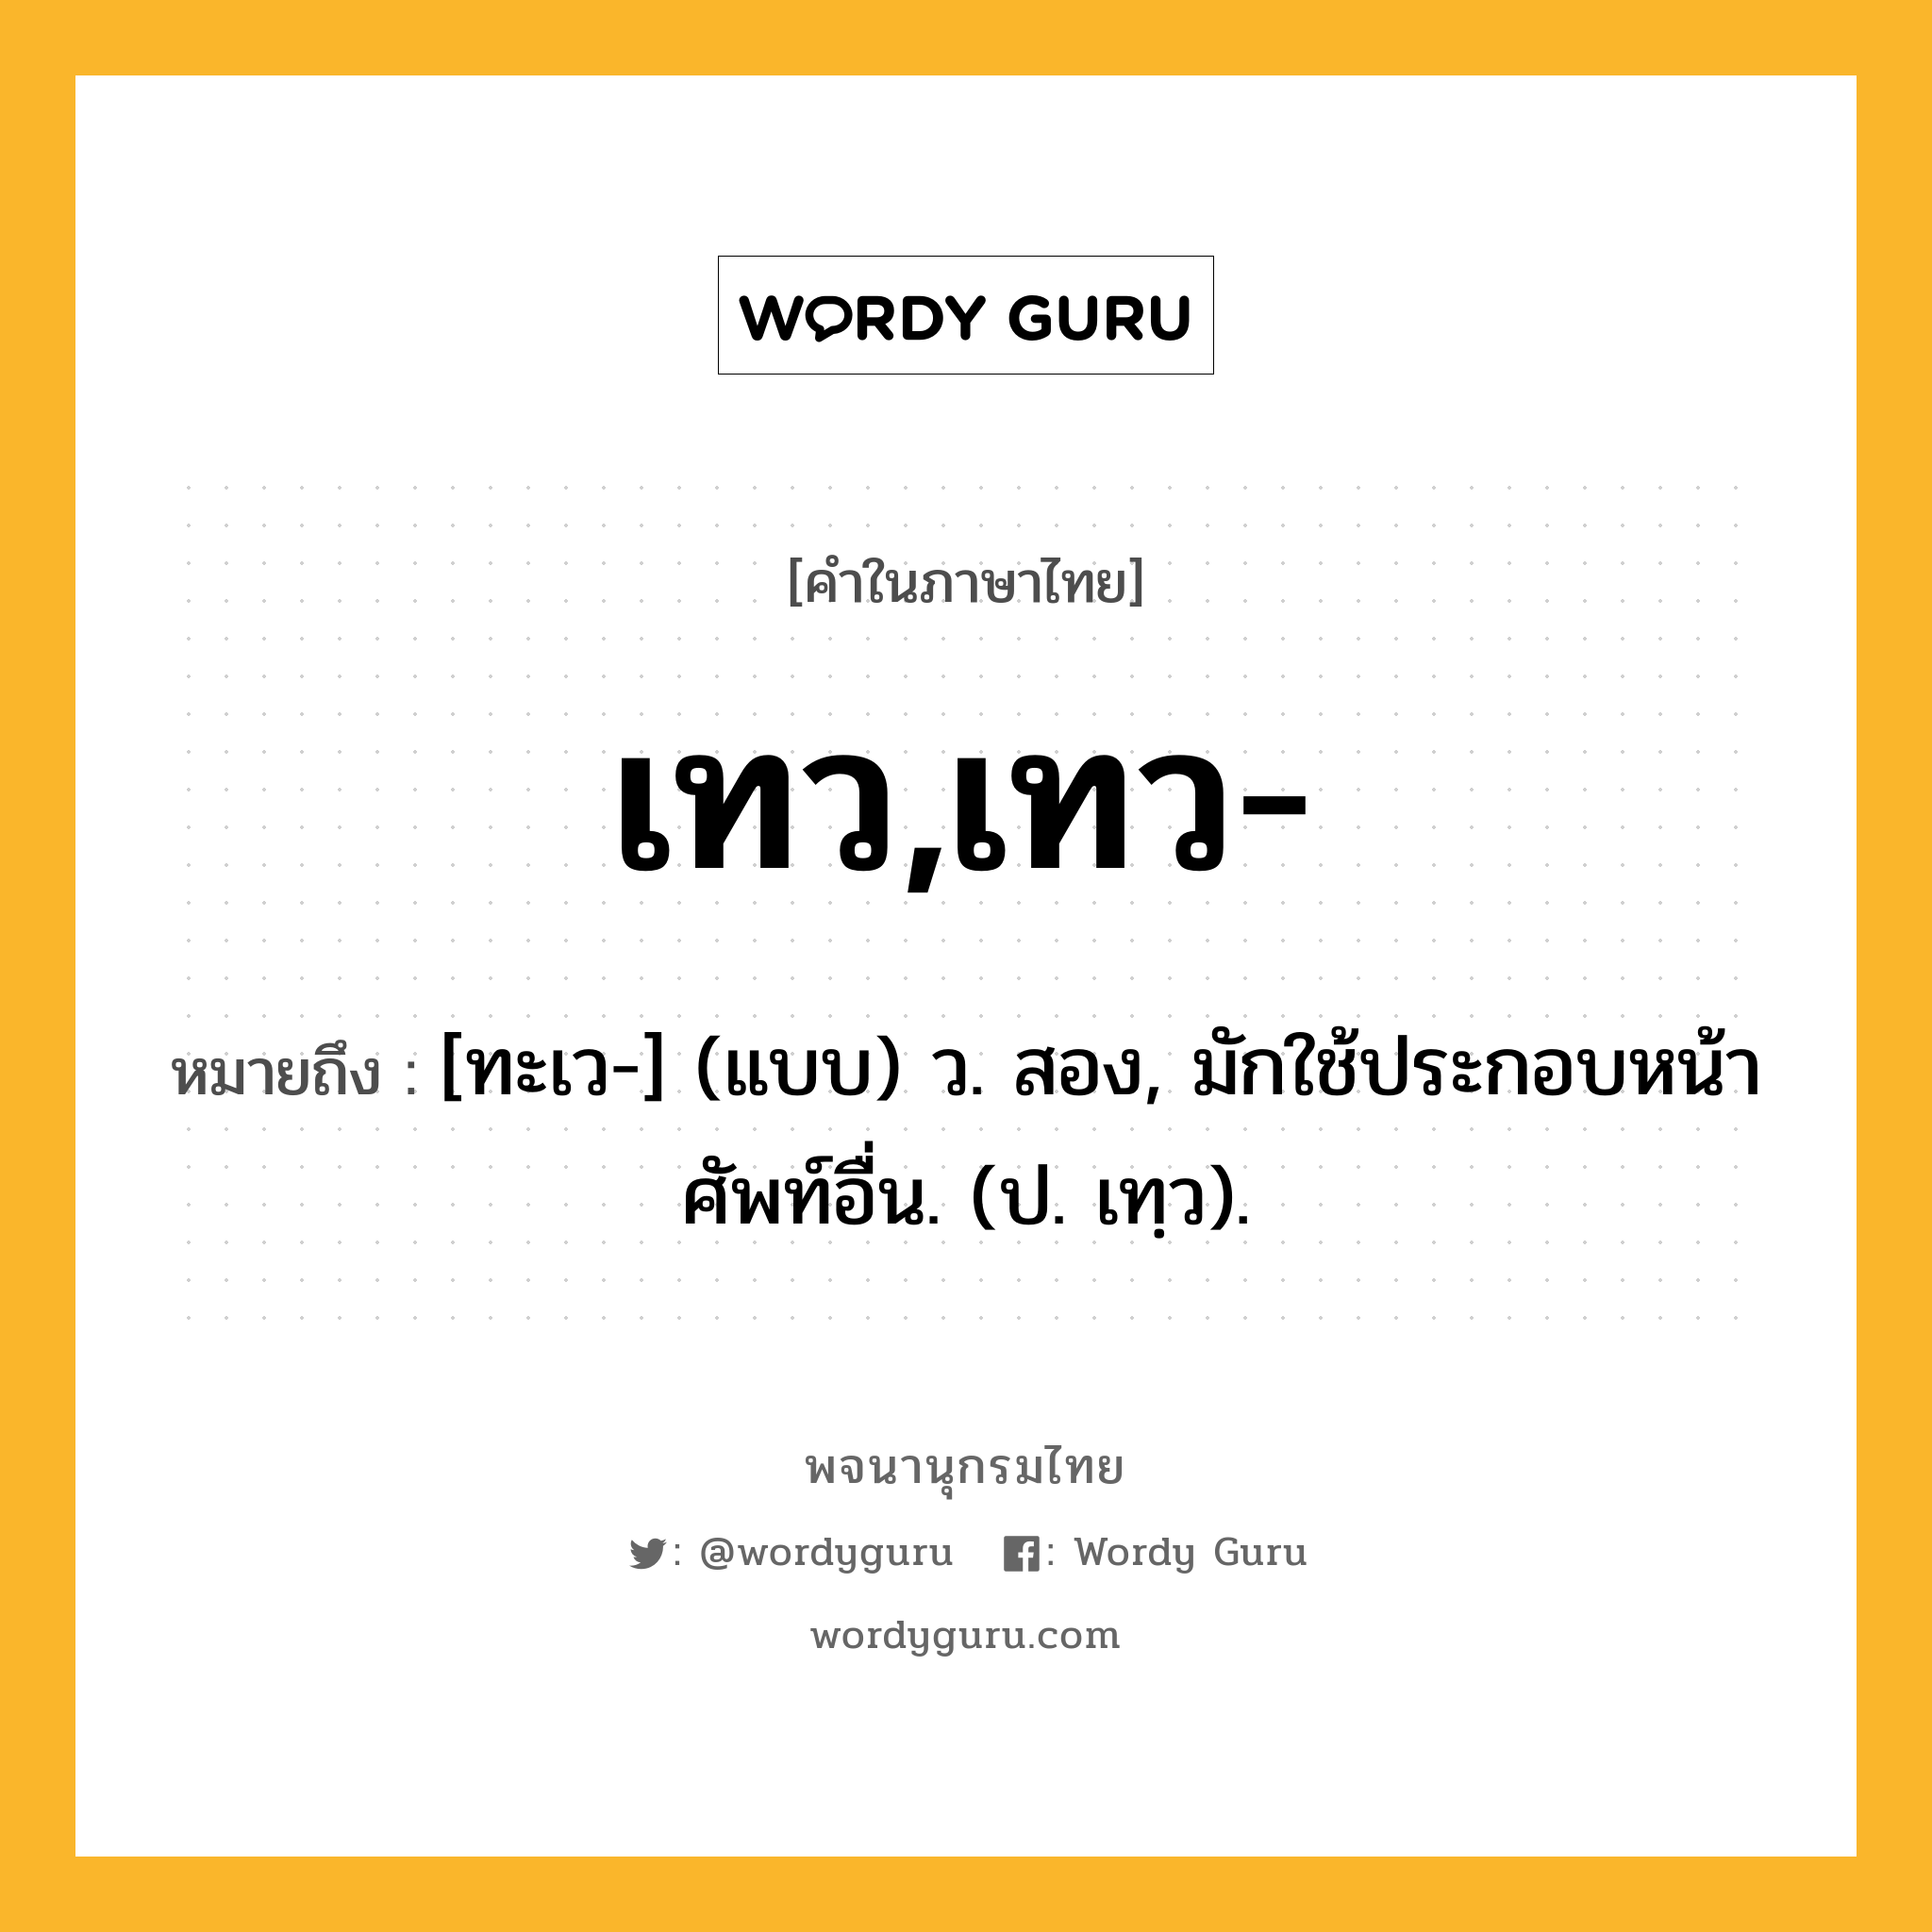 เทว,เทว- ความหมาย หมายถึงอะไร?, คำในภาษาไทย เทว,เทว- หมายถึง [ทะเว-] (แบบ) ว. สอง, มักใช้ประกอบหน้าศัพท์อื่น. (ป. เทฺว).